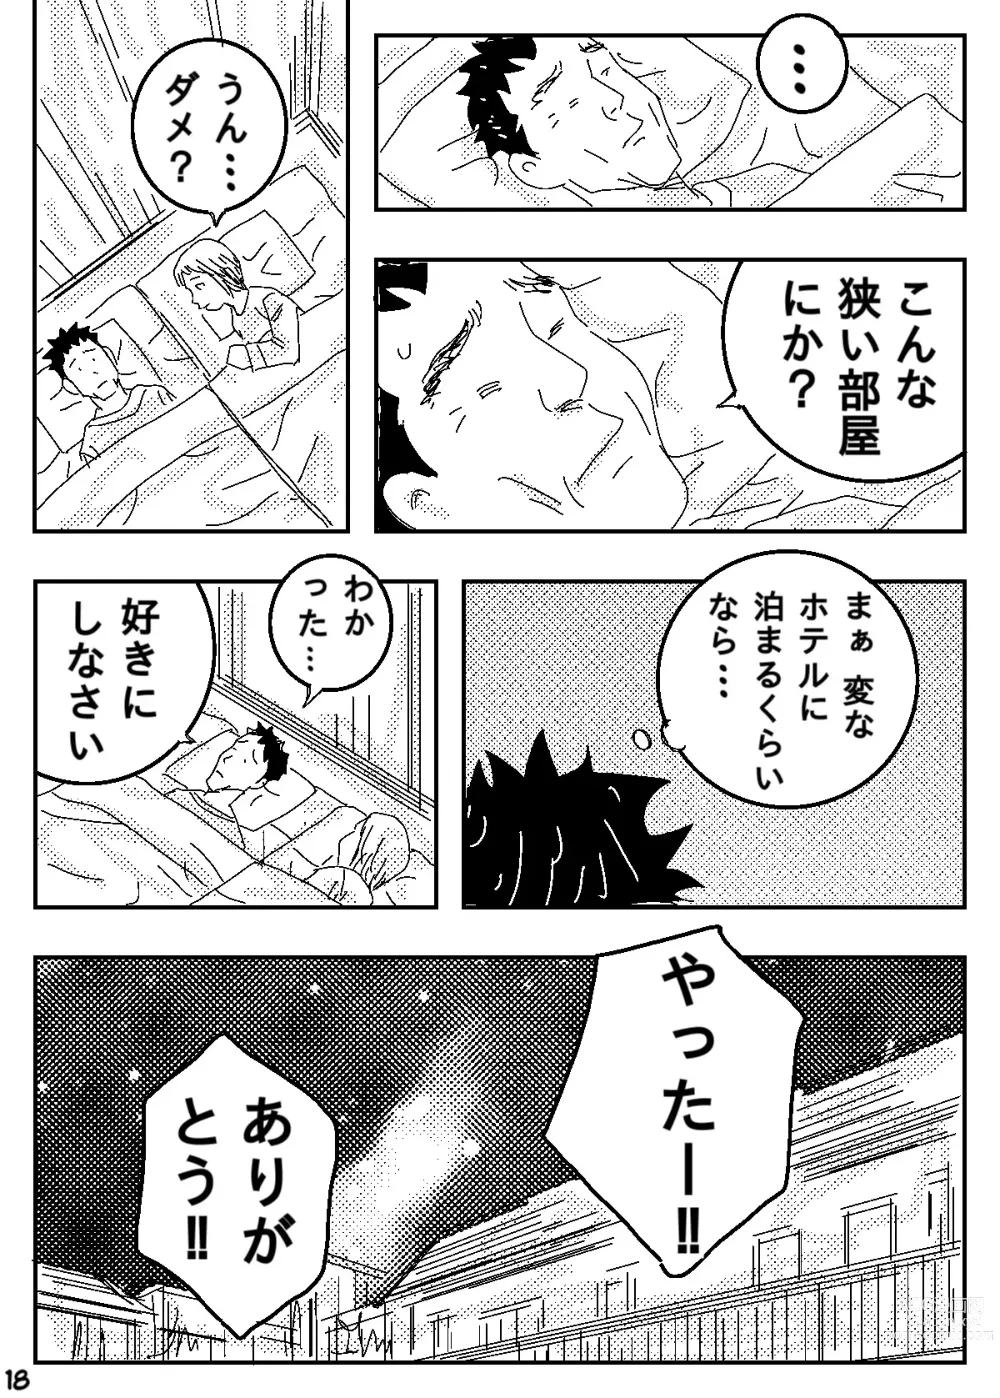 Page 18 of doujinshi Gesu no Kiwami Kazoku